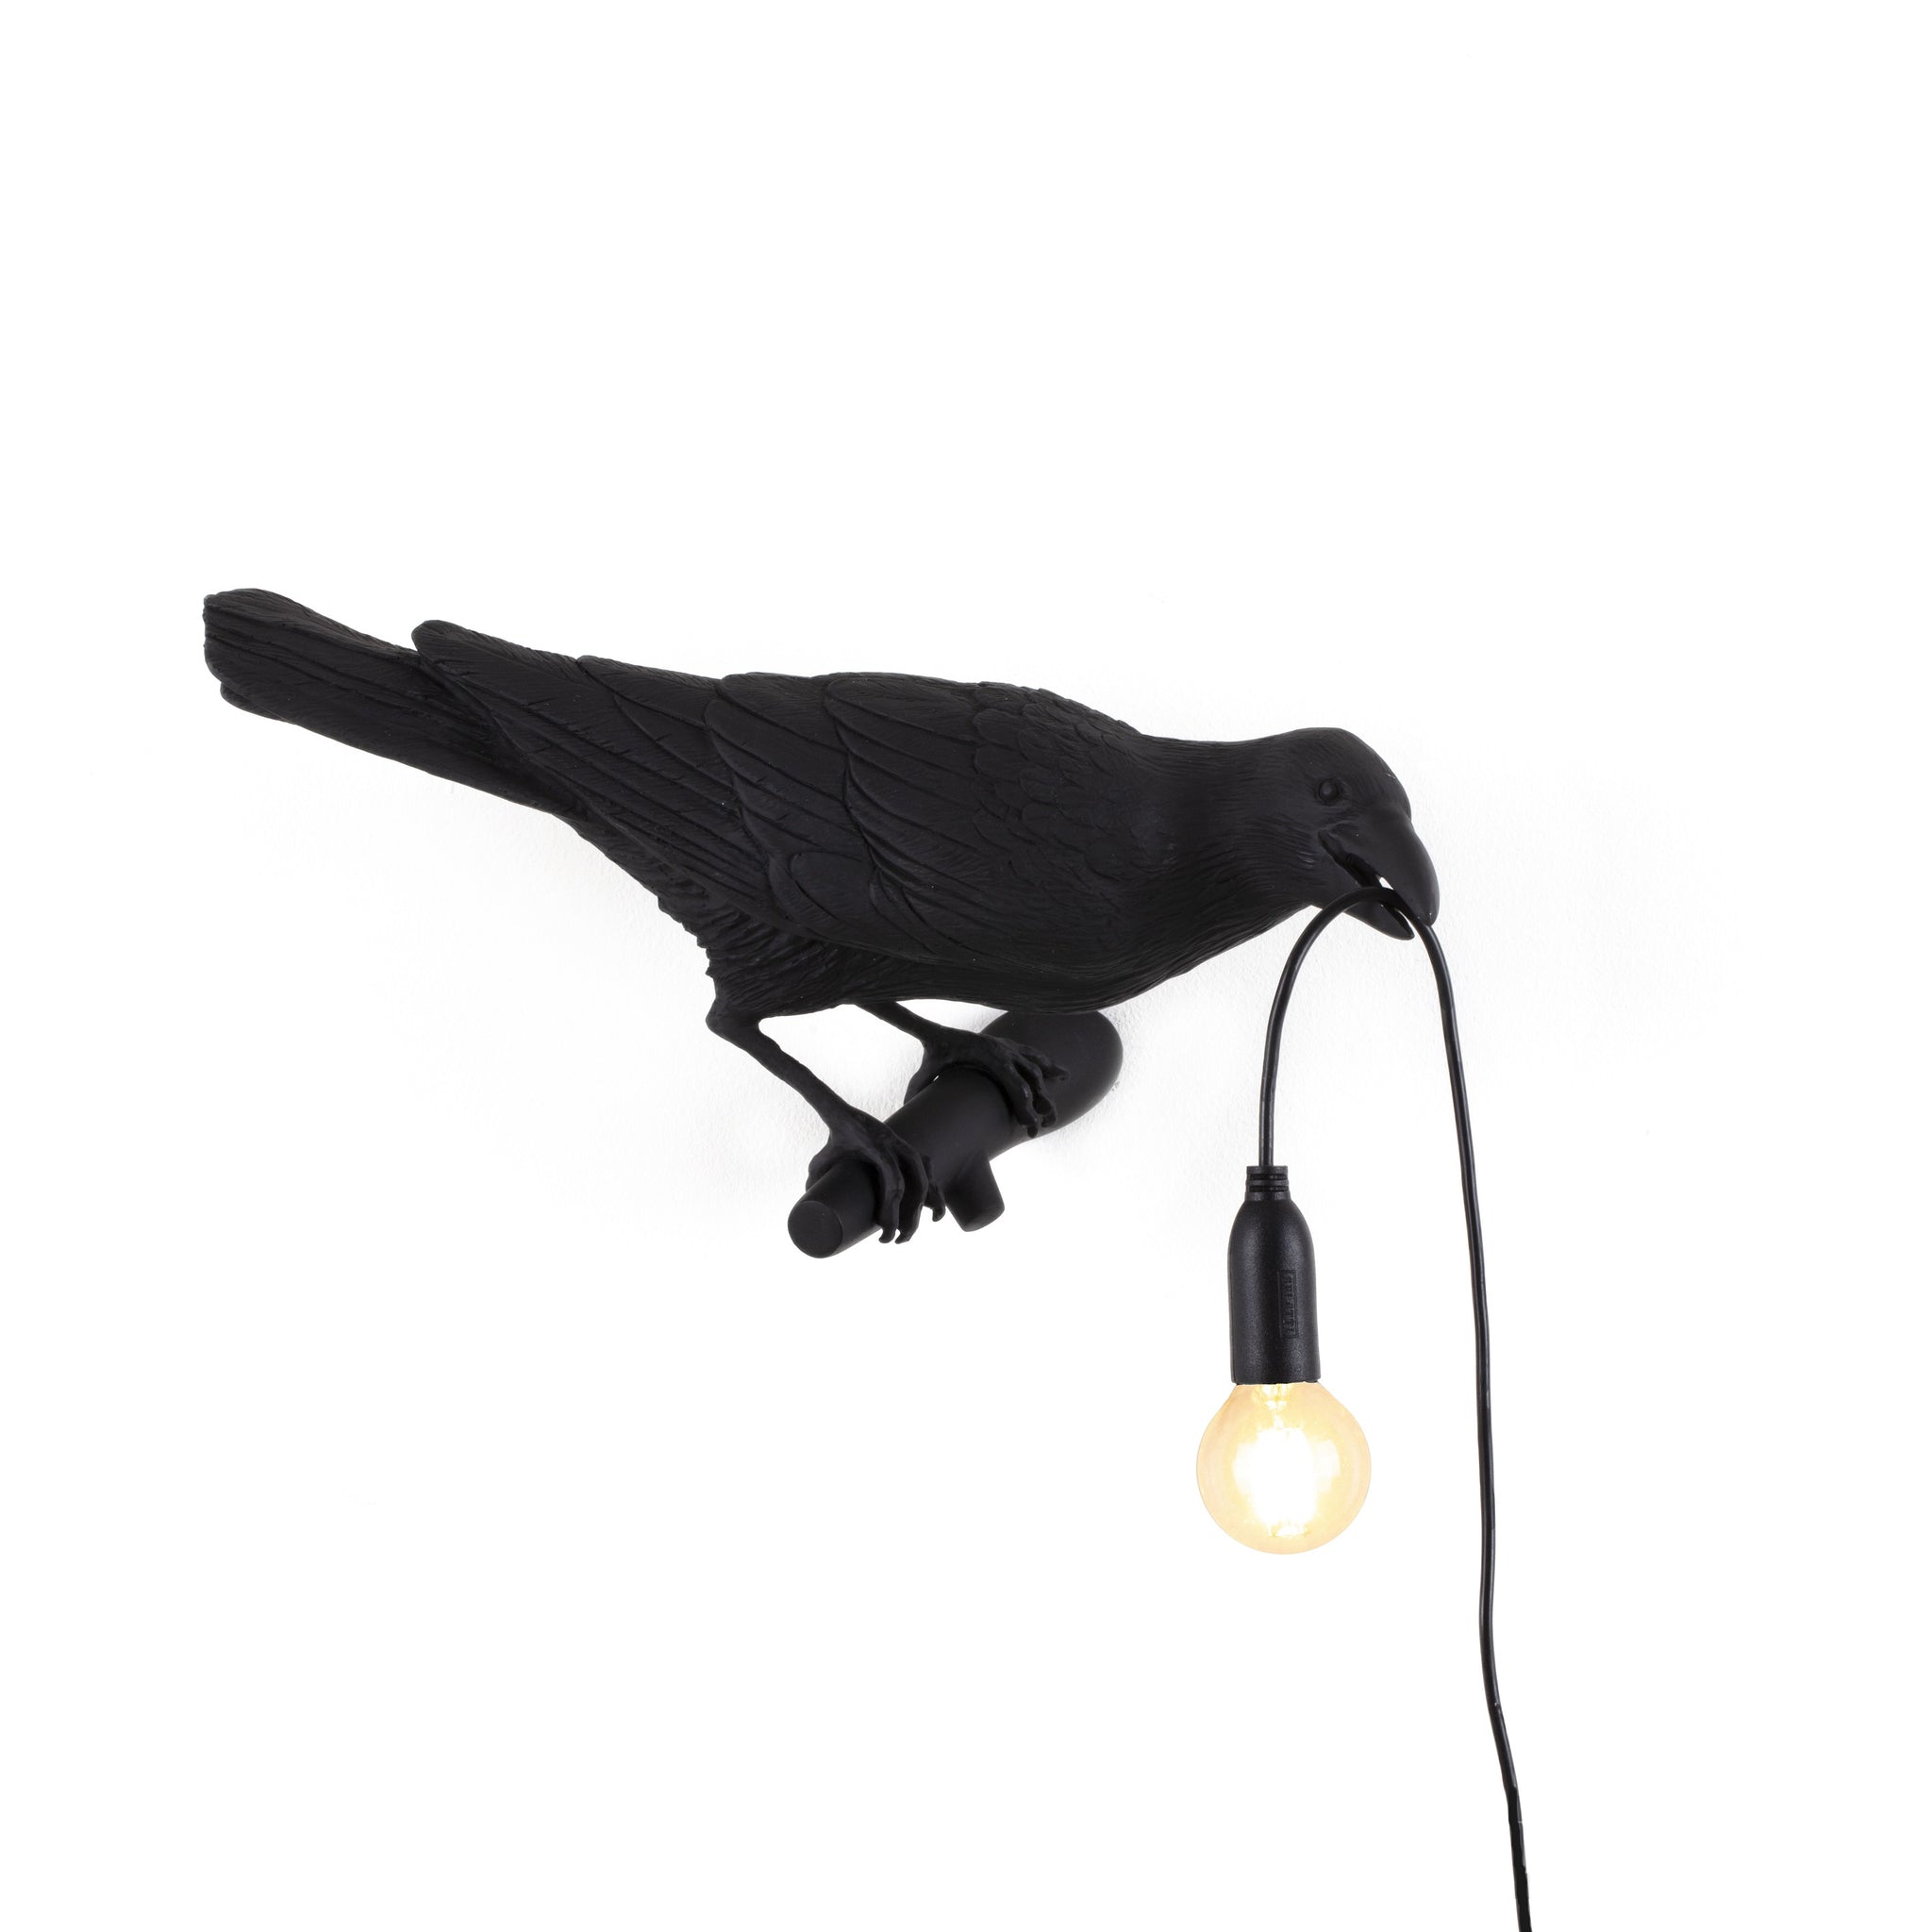 De Bird Lamp is een ontwerp van Marcantonio voor het Italiaanse merk Seletti. In sprookjes en films staat de kraai vaak symbool voor onheil. Maar deze vogels zijn je gevederde vriend en wijzen de weg in het donker. Verschillende versies, zowel indoor als outdoor. 